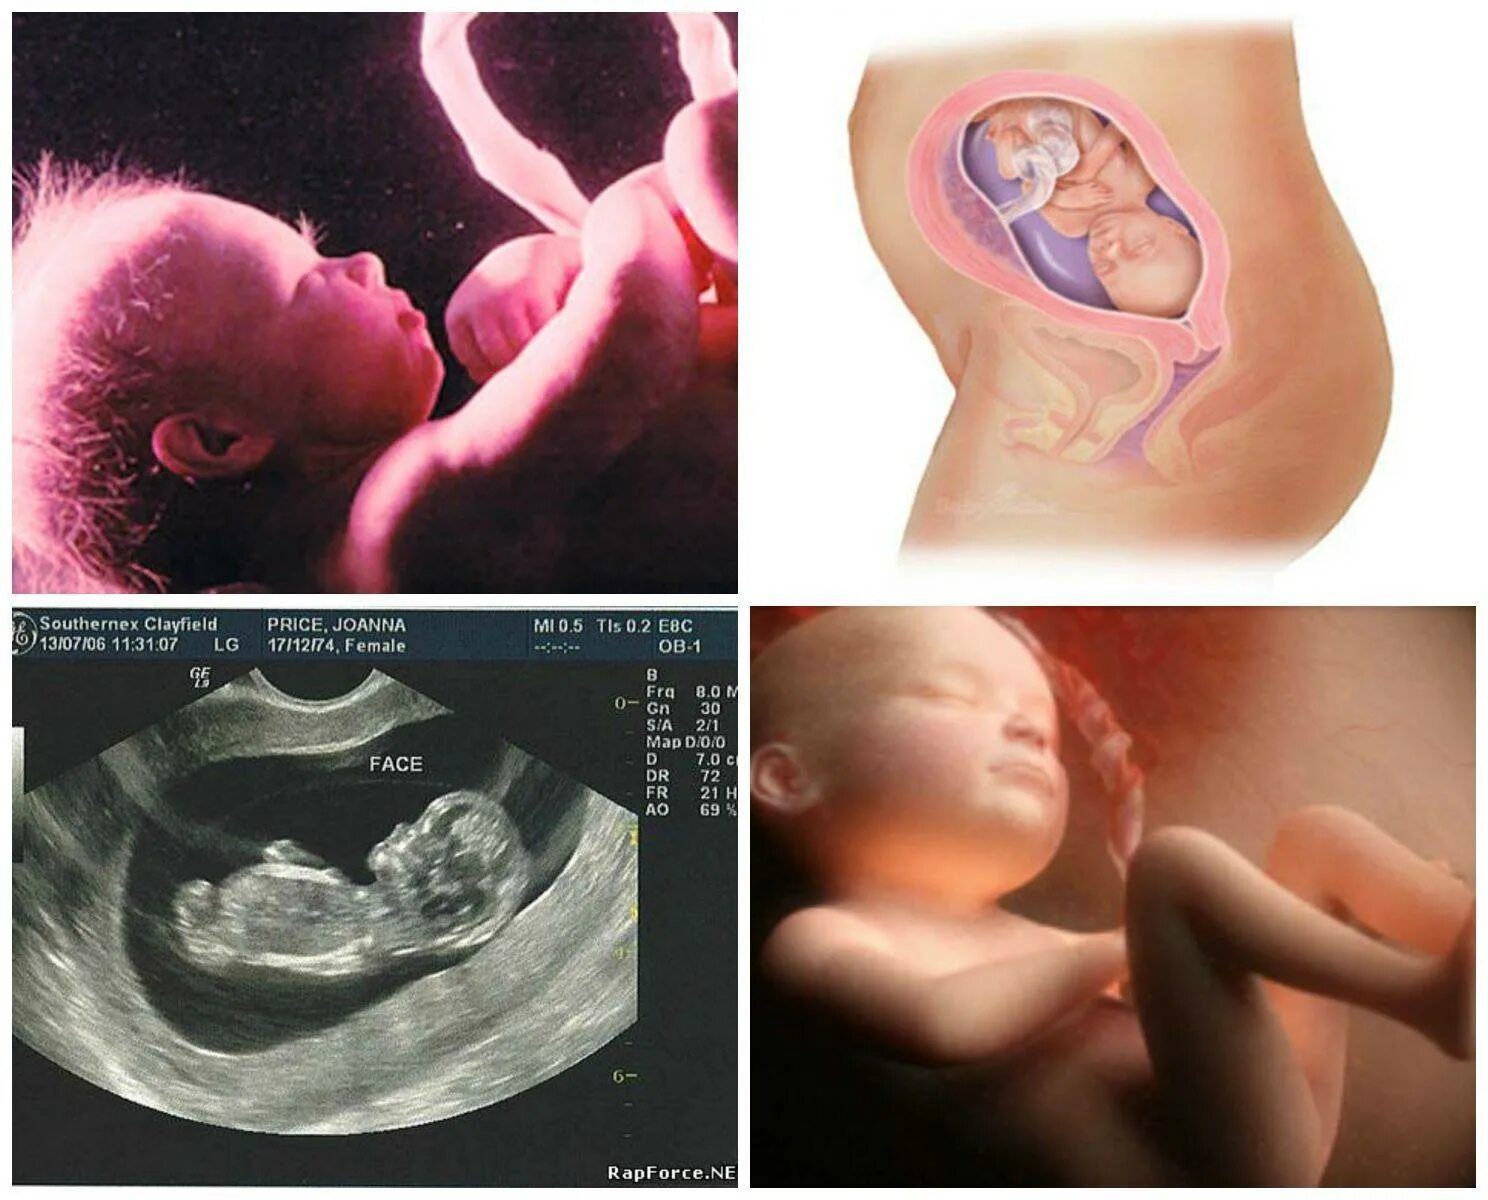 Шевеления на 25 неделе. 27 Неделя беременности фото плода. Ребенок на 26 неделе беременности УЗИ. 26 Неделя беременности фото плода. Беременность 26-27 недель фото плода.